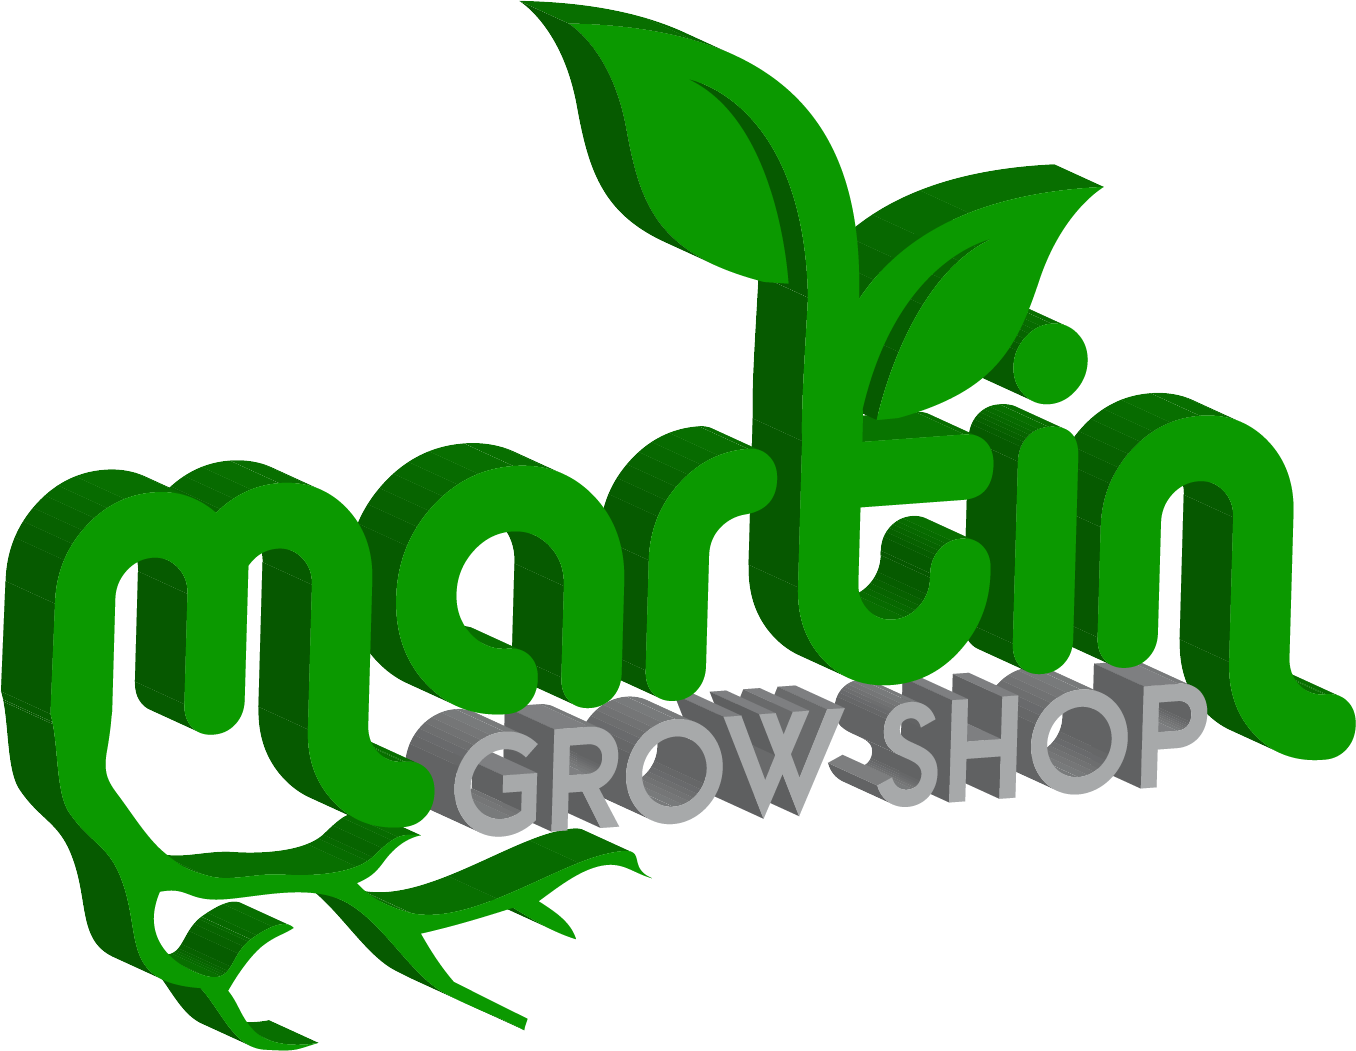 Martin Grow Shop Online & Seeds Shop Online